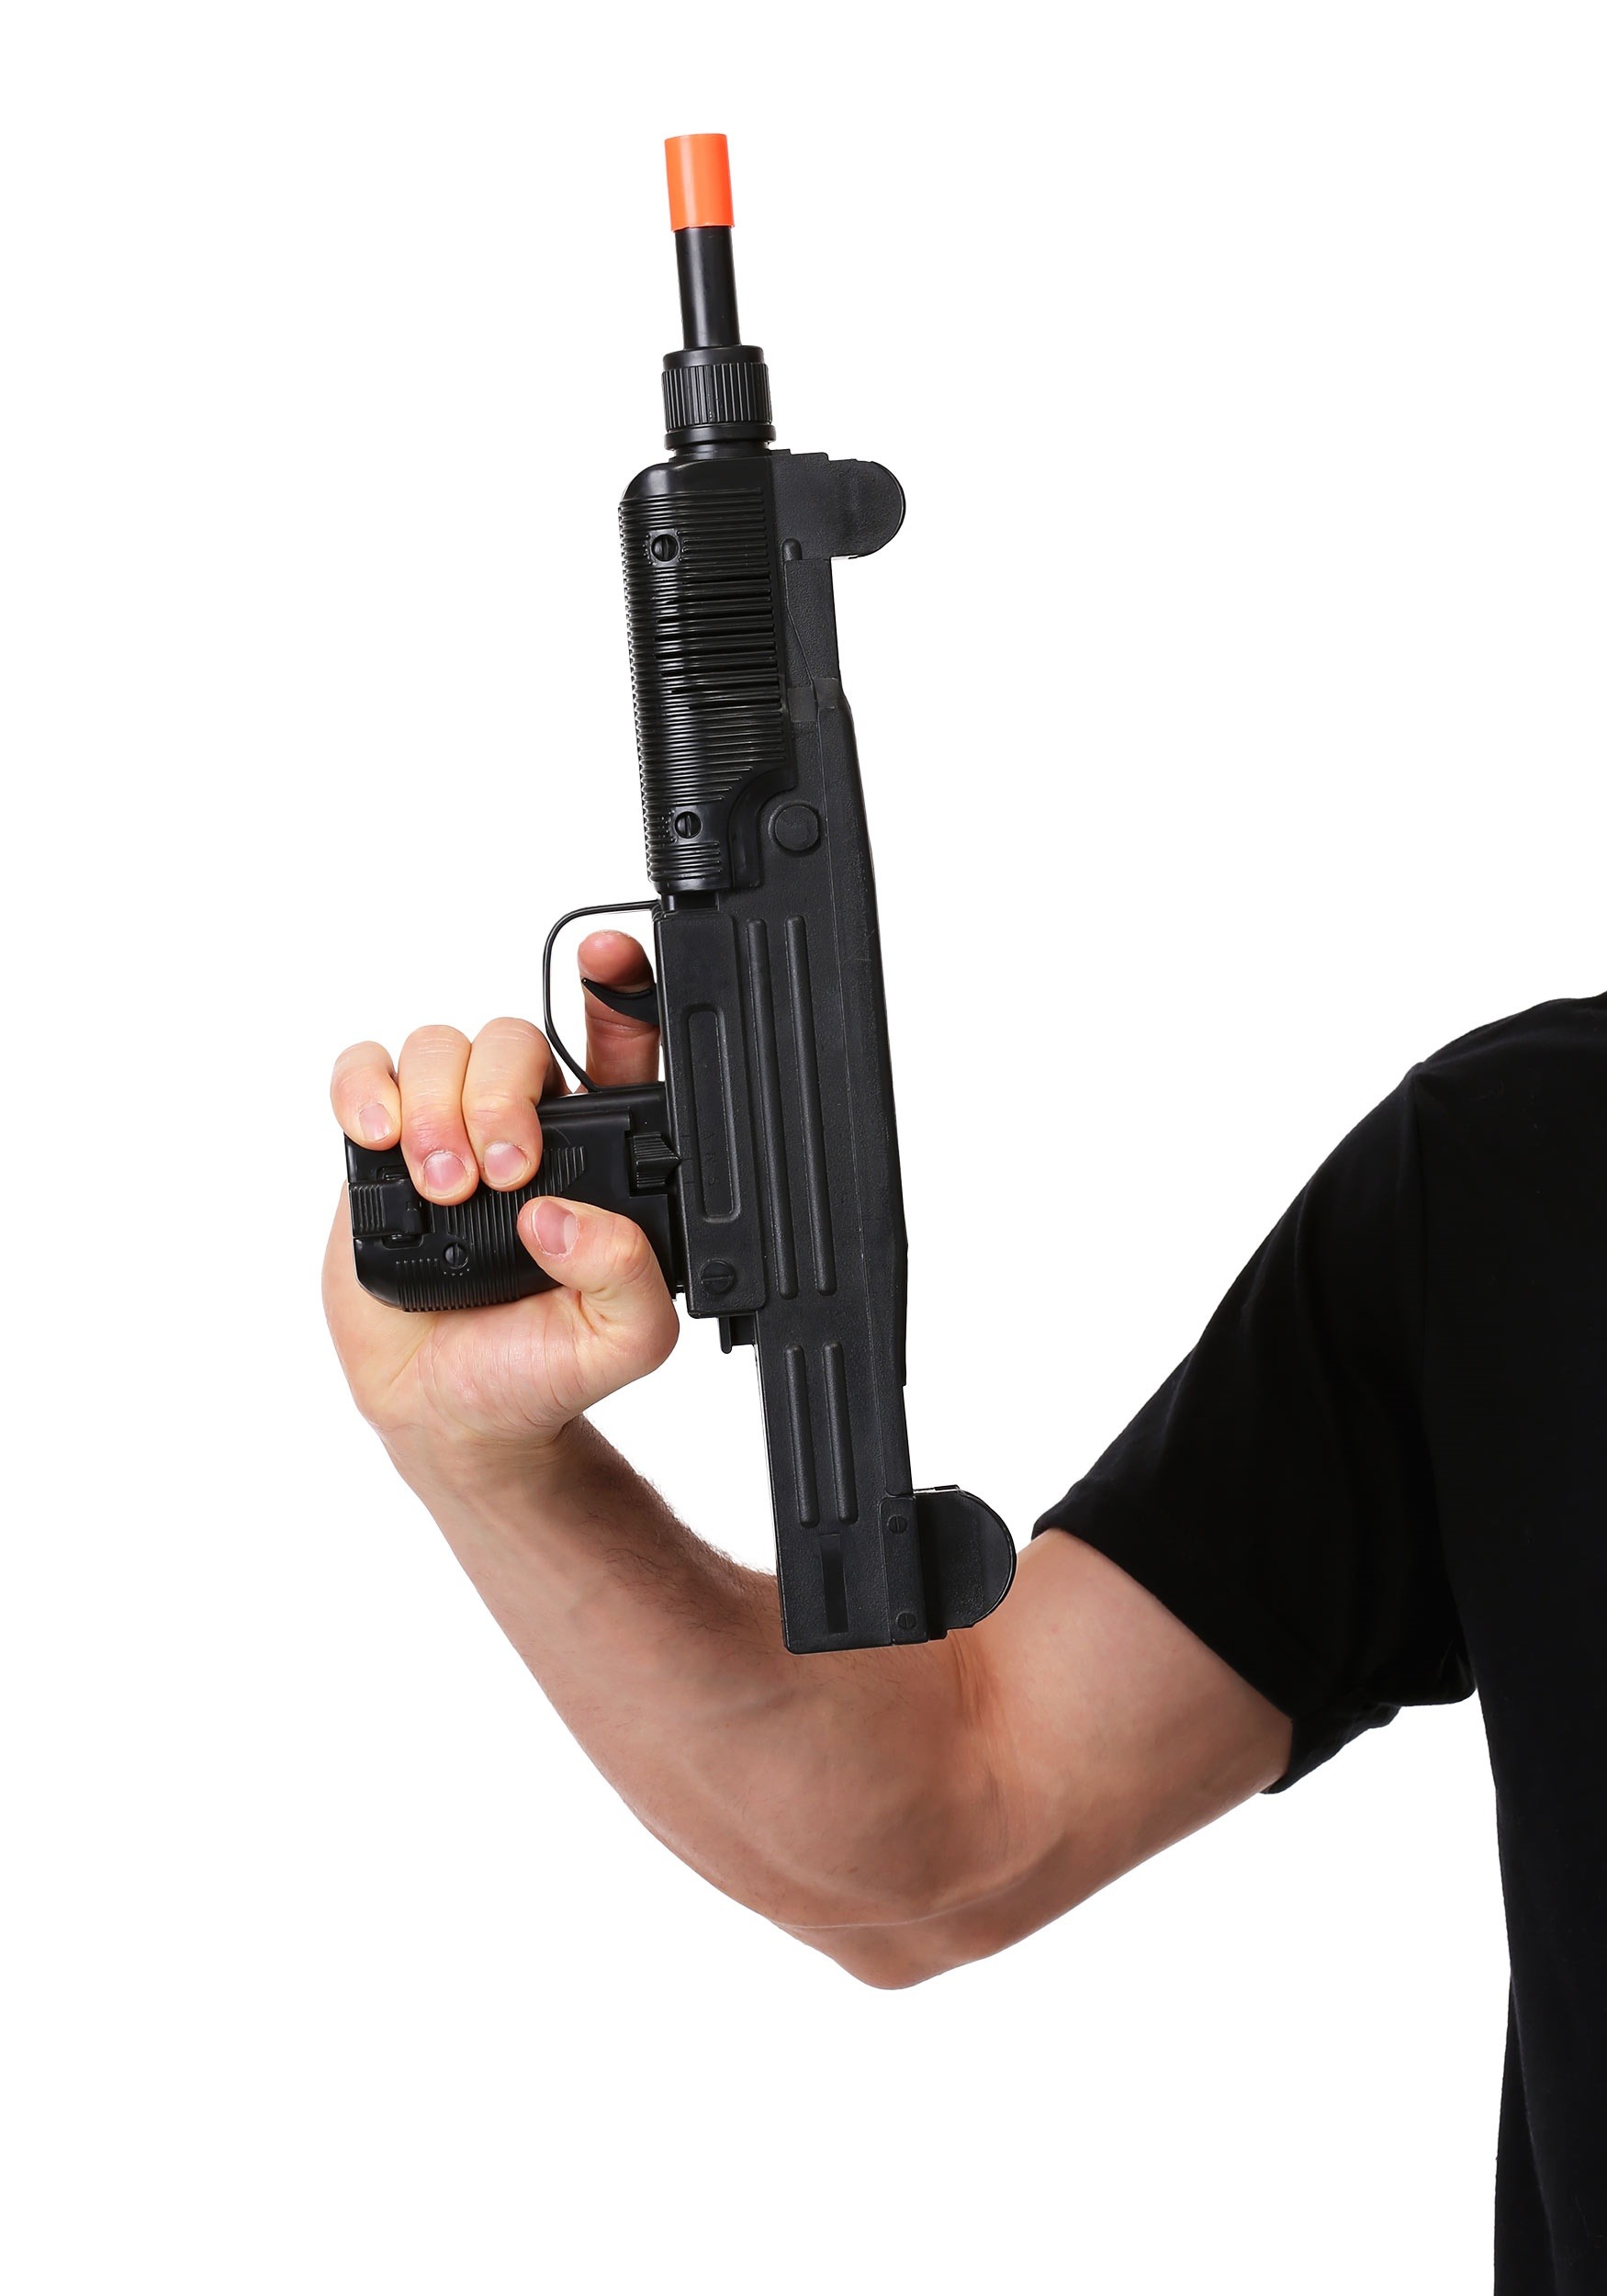 pistolas de juguete – Yaxa Guatemala